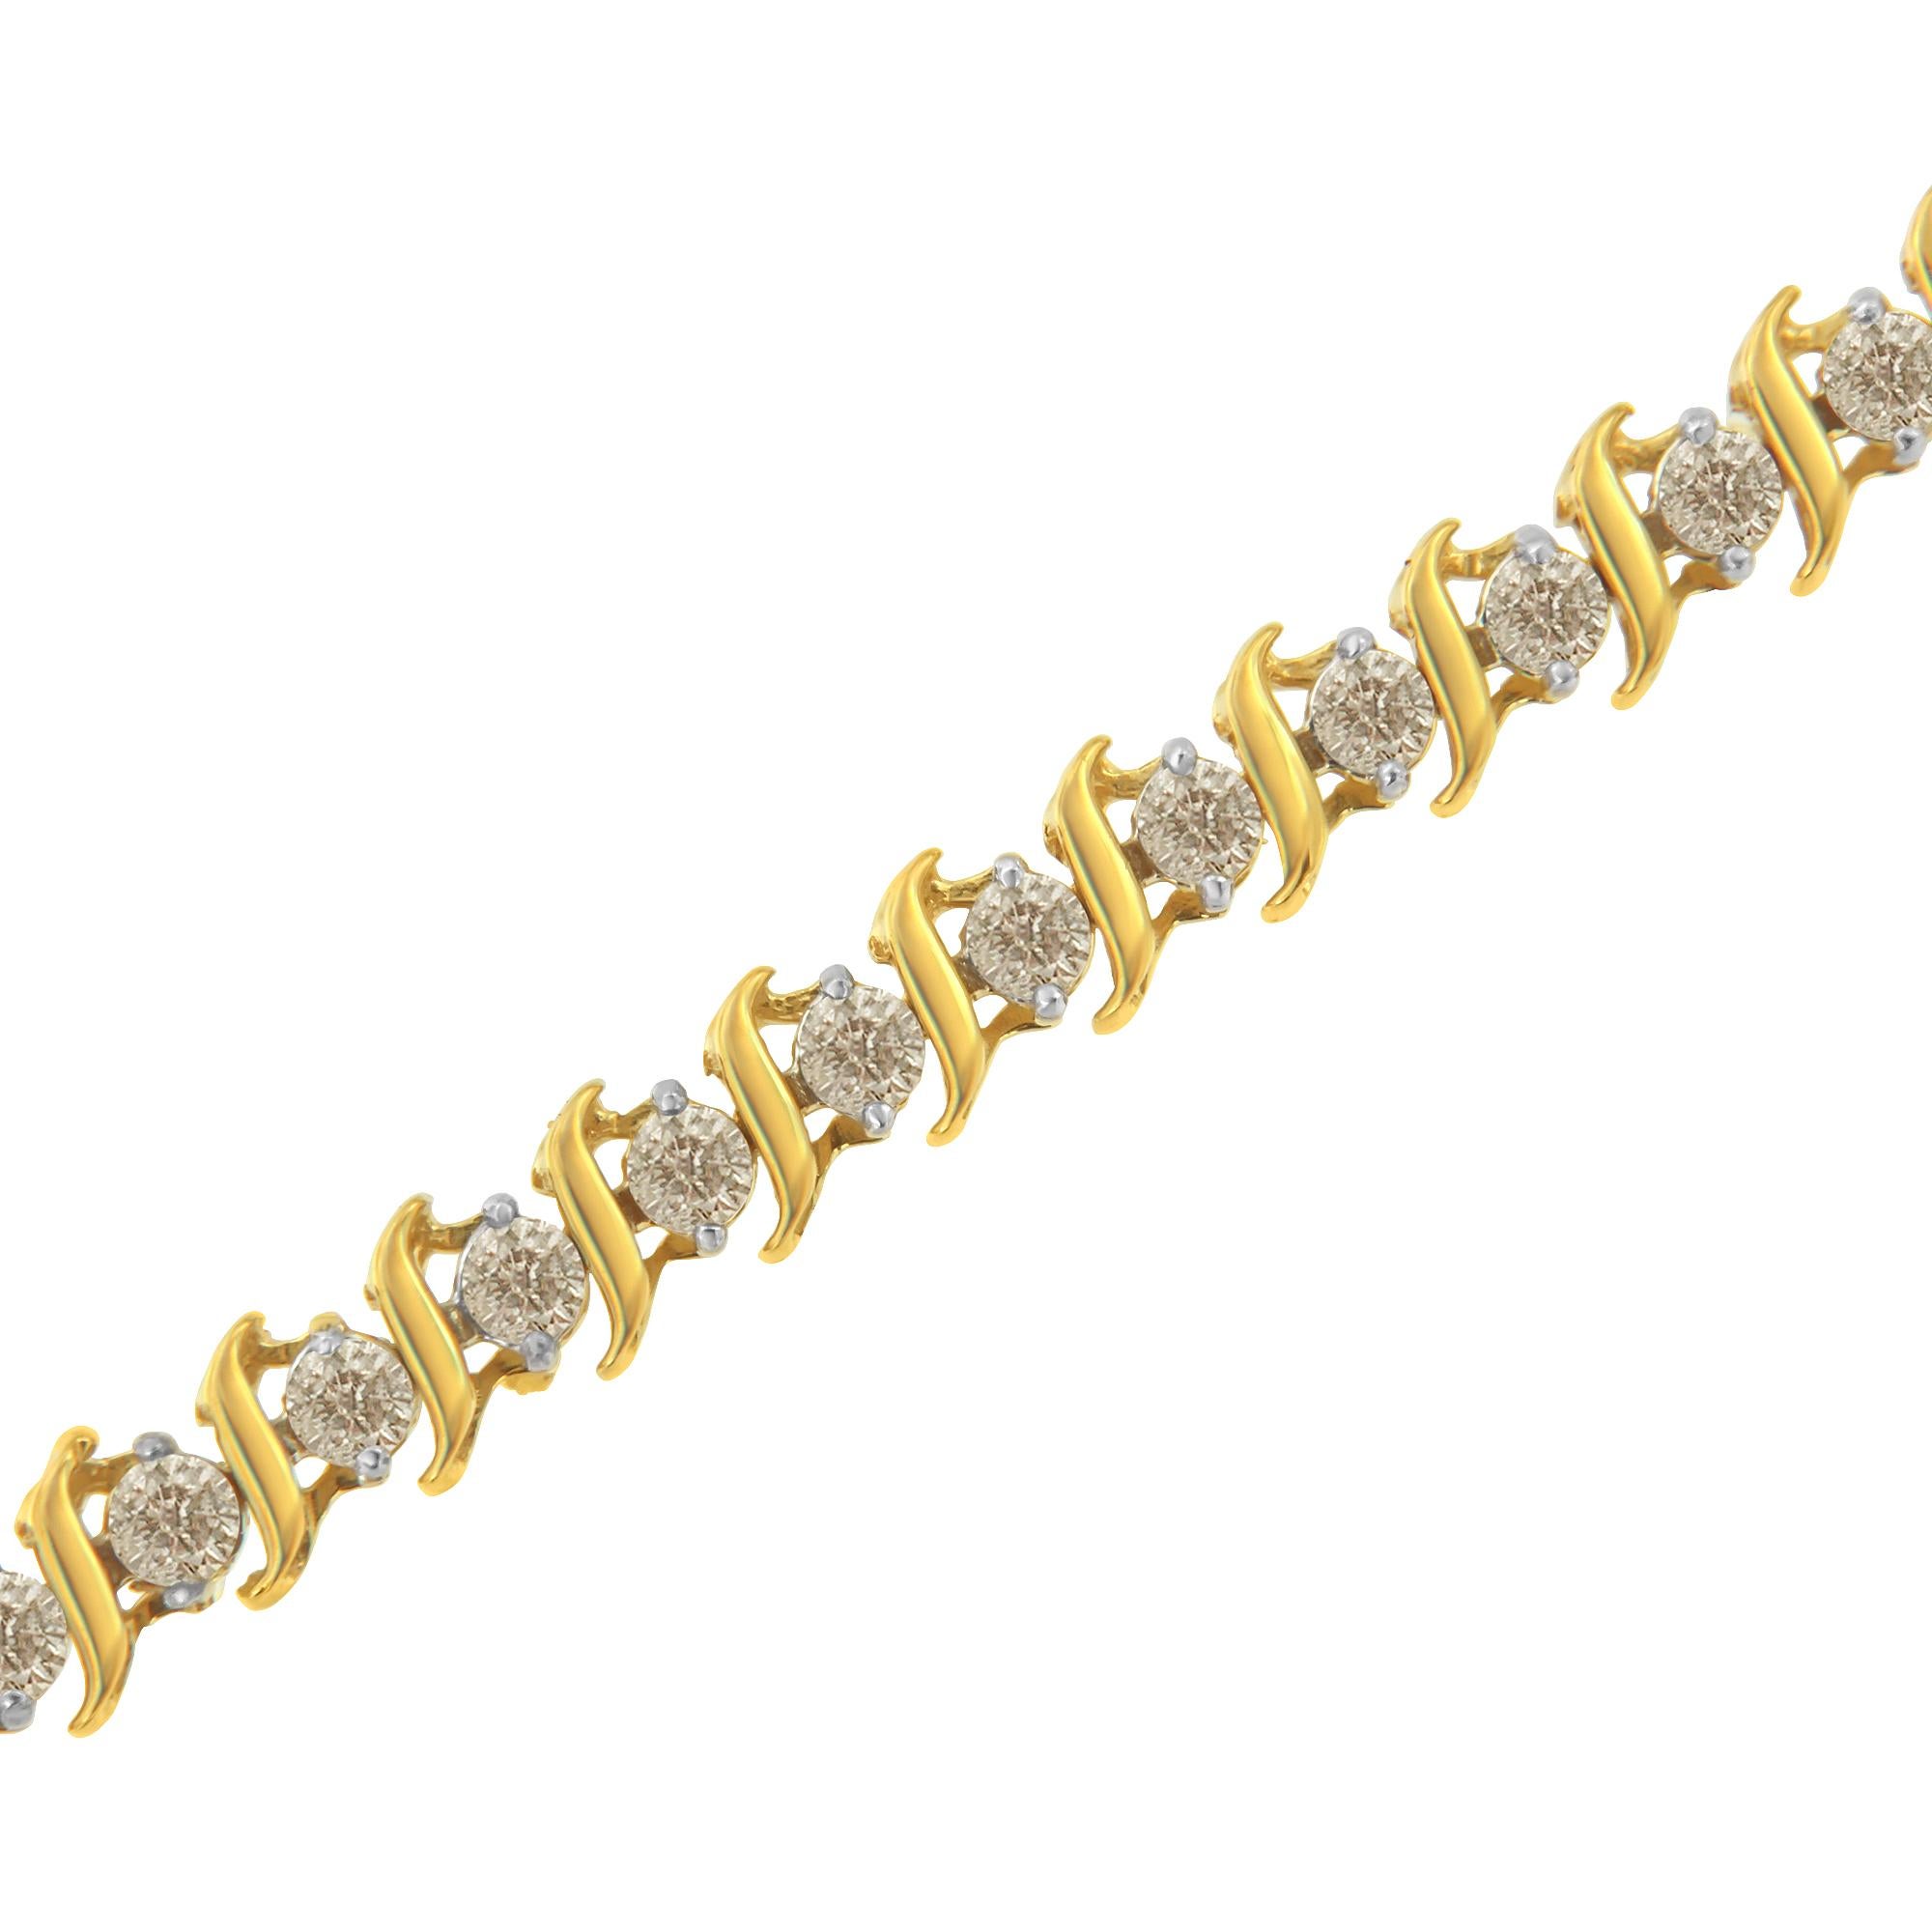 Dieses elegante und zeitlose Luxus-Tennisarmband besticht durch ein Gesamtgewicht von 2,0 Karat an Diamanten im Rundschliff. Er besteht aus S-förmigen Wellen aus 10K Gelbgold, die sich mit runden Diamanten in zwei Zackenfassungen abwechseln. Das